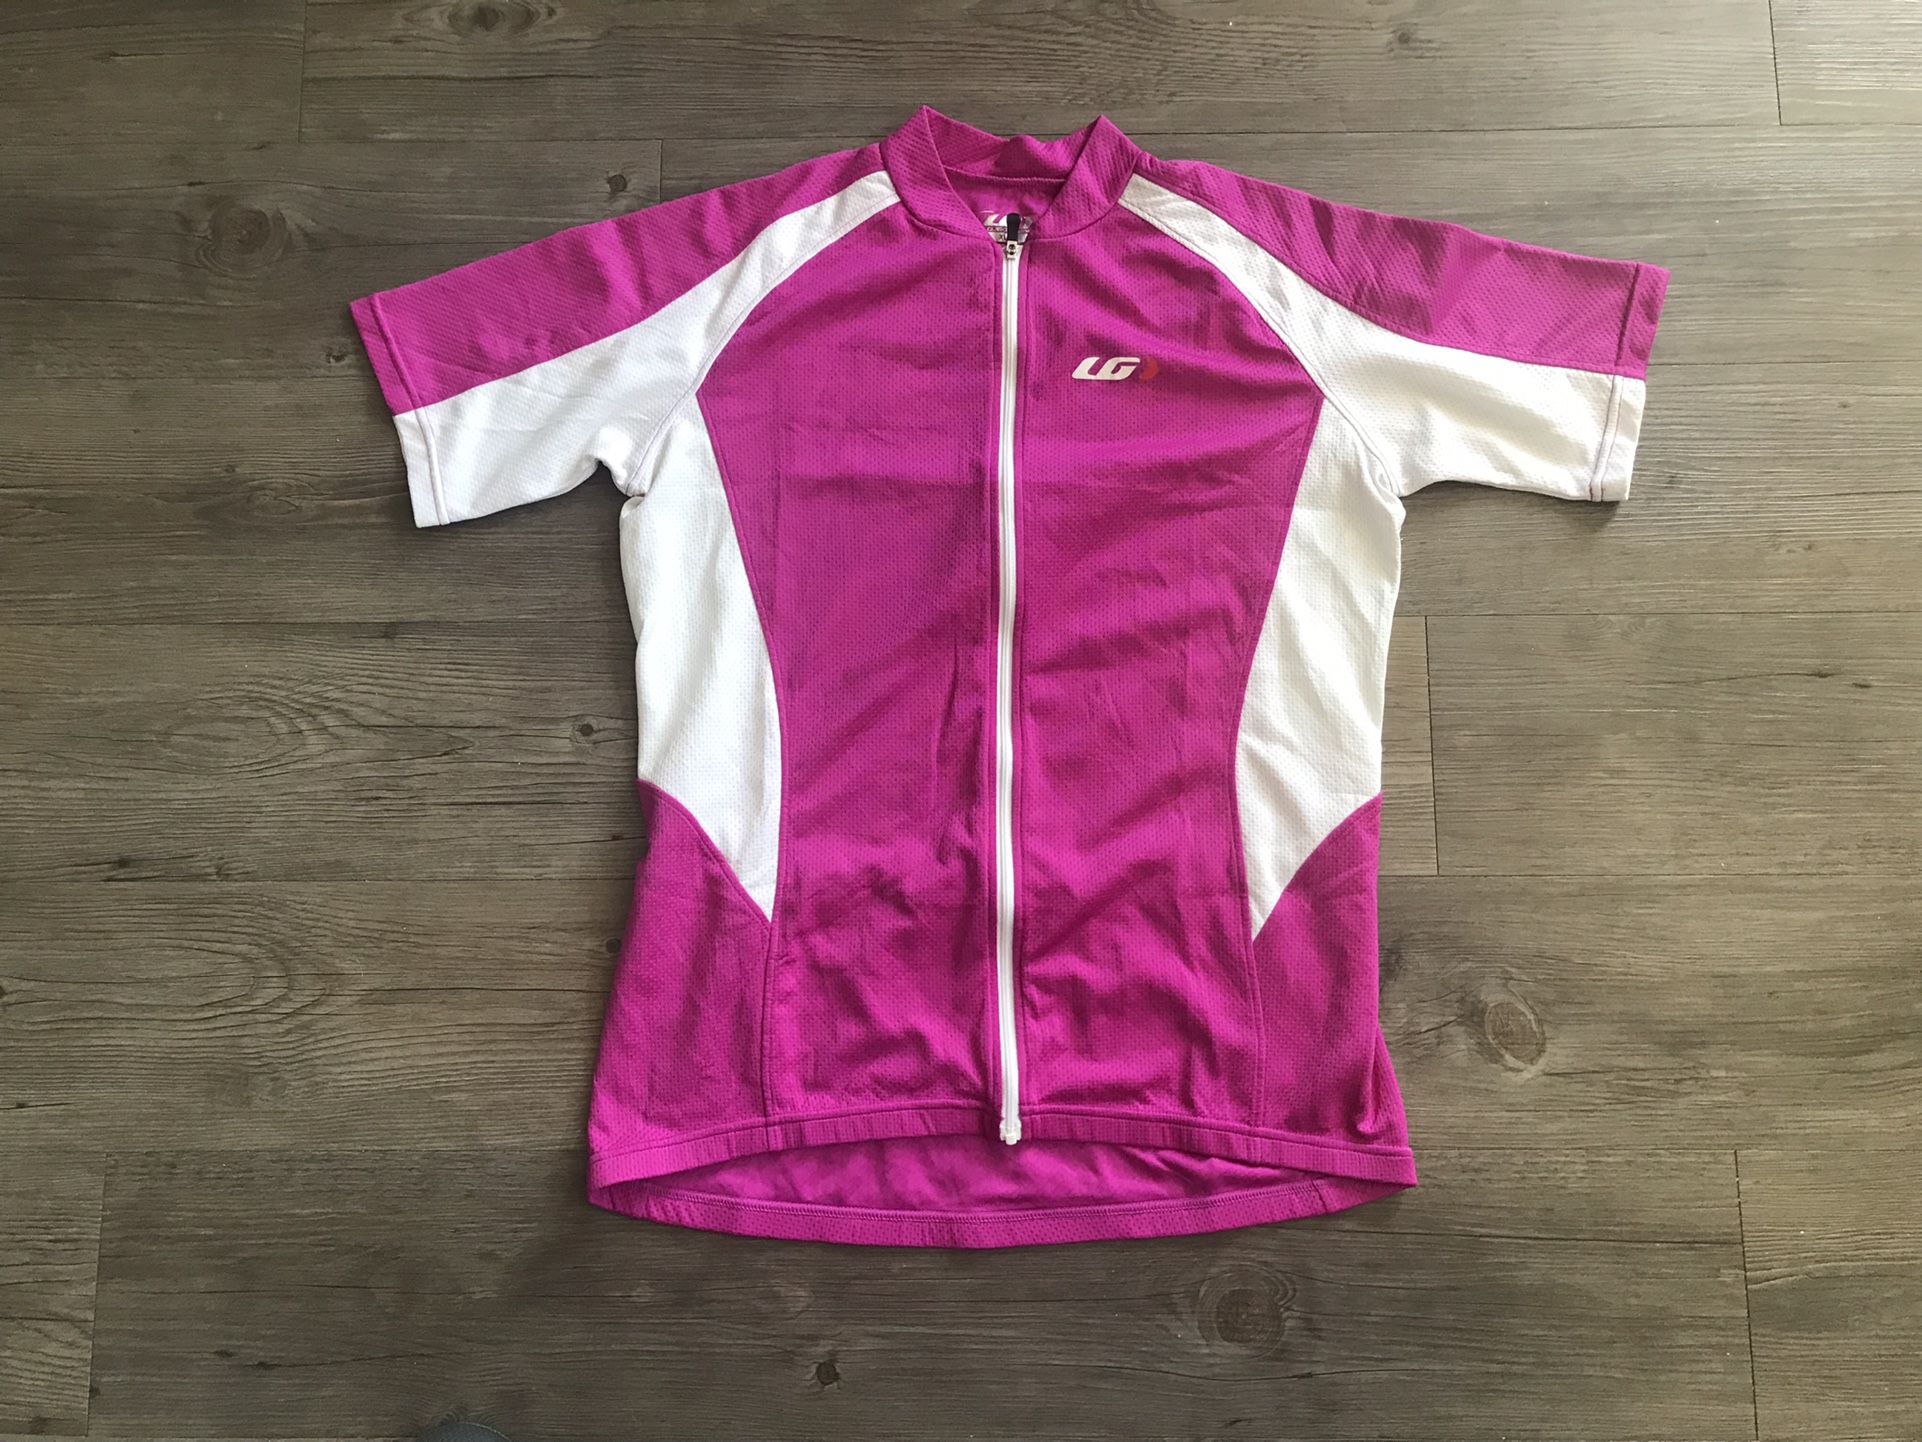 Women’s Cycling Jersey - XL